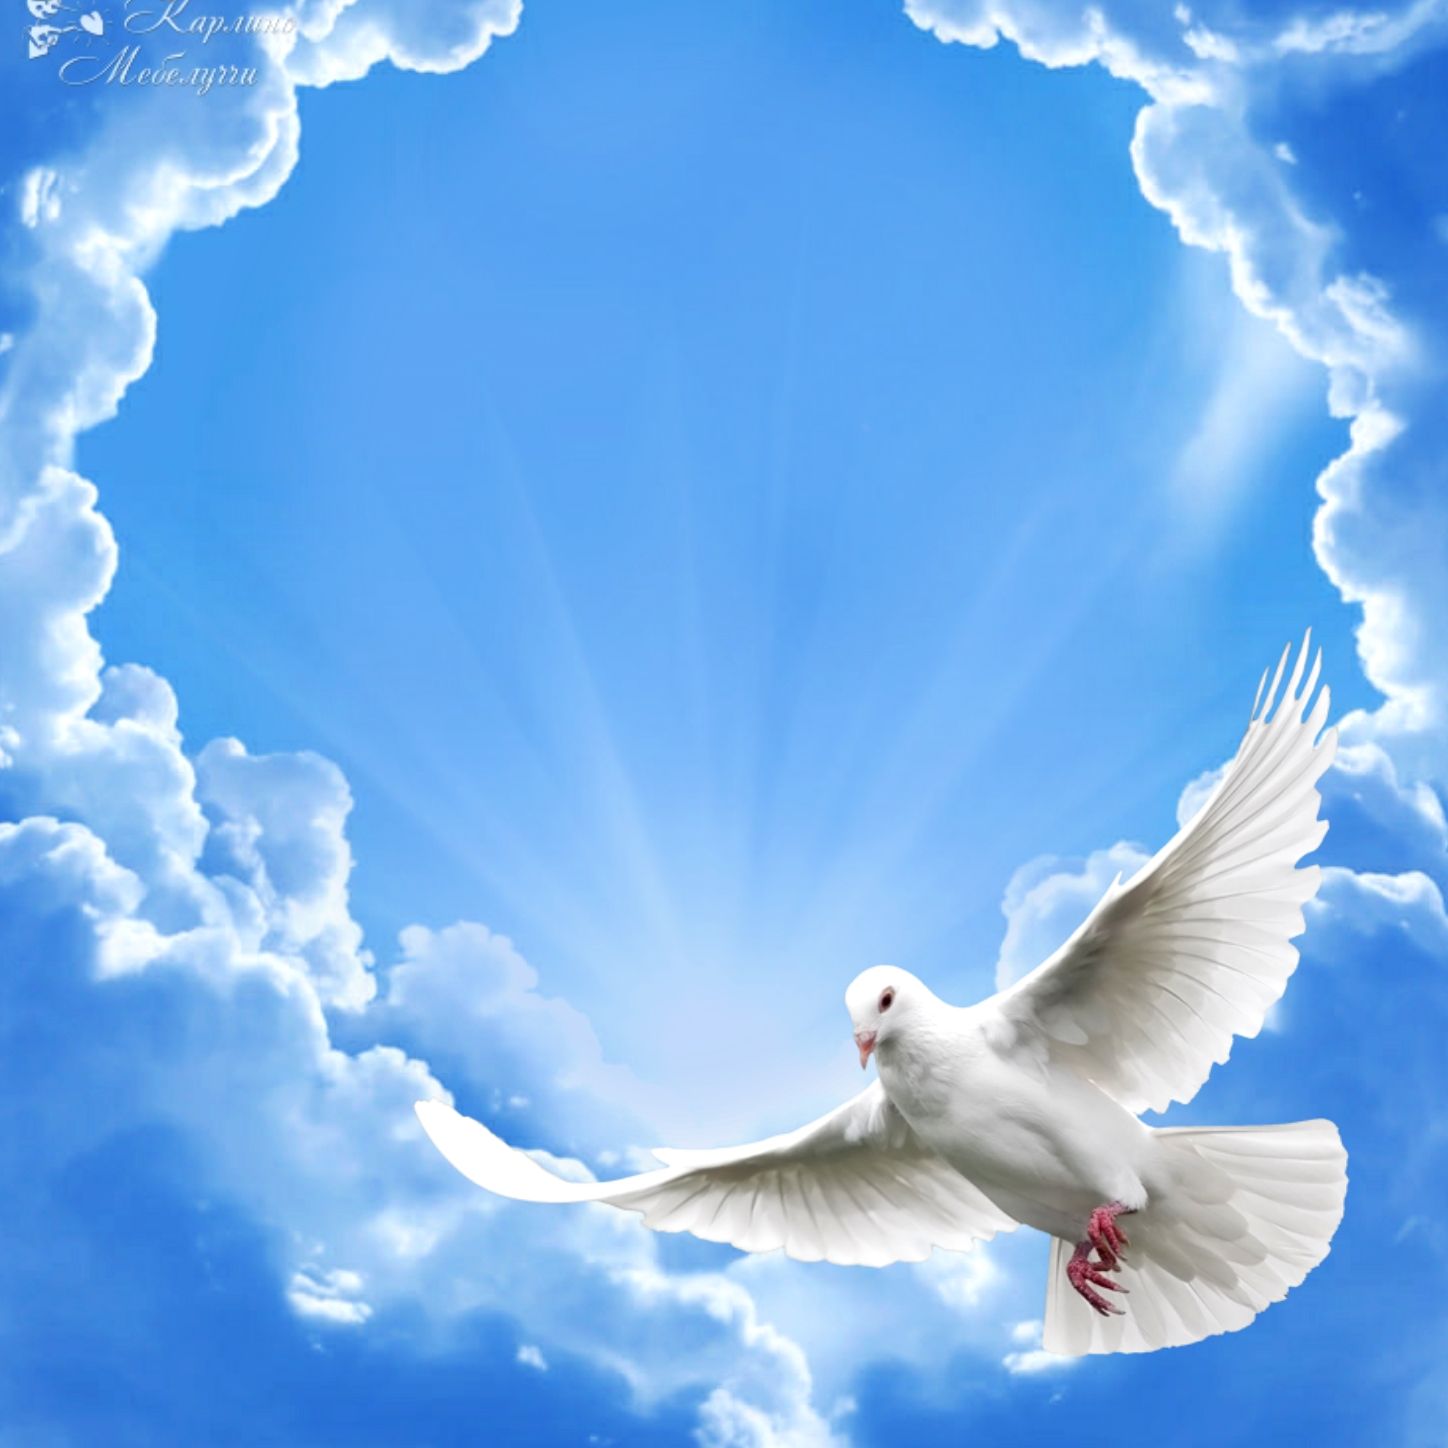 White Pigeon #Ghy01 #specialDays. Fotos de palomas, Fotos de alas de ángel, Fotos del espiritu santo